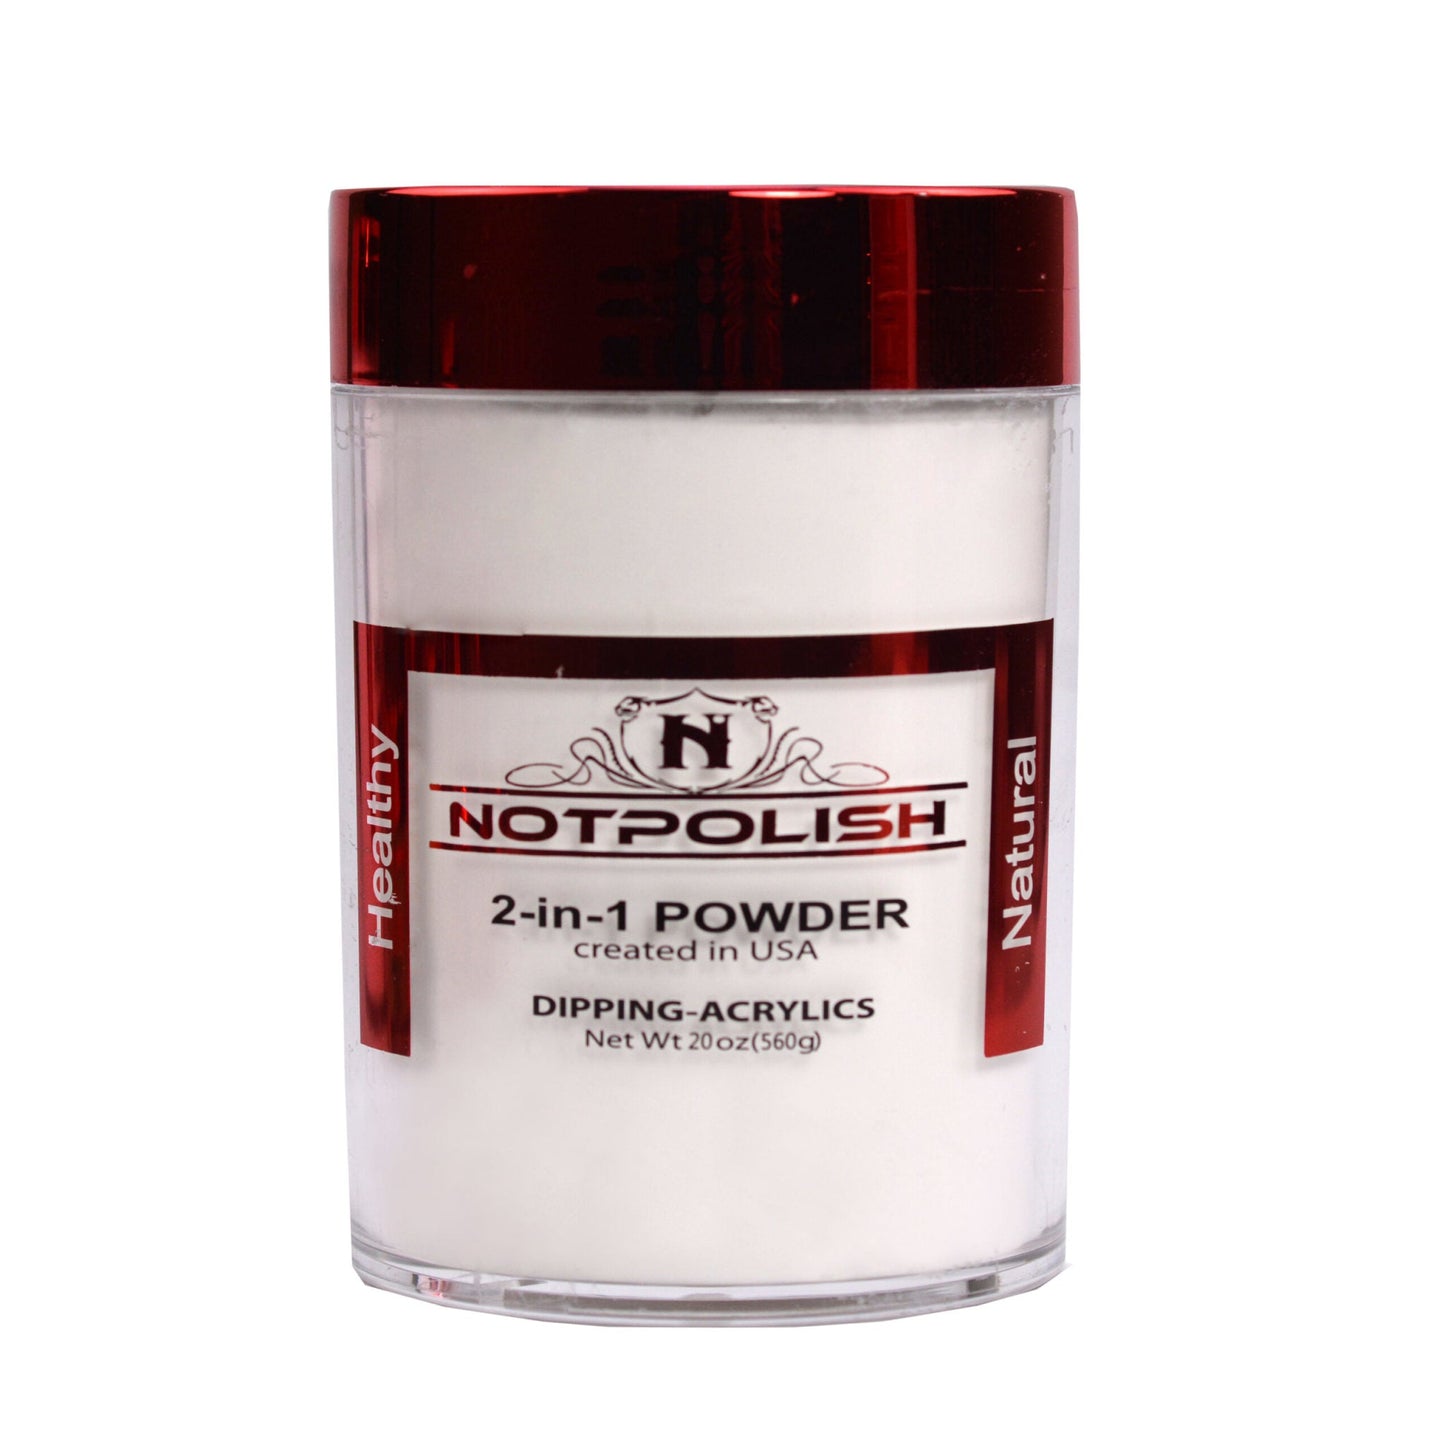 Notpolish 2-in-1 Powder - 101 Milky White (16 oz)